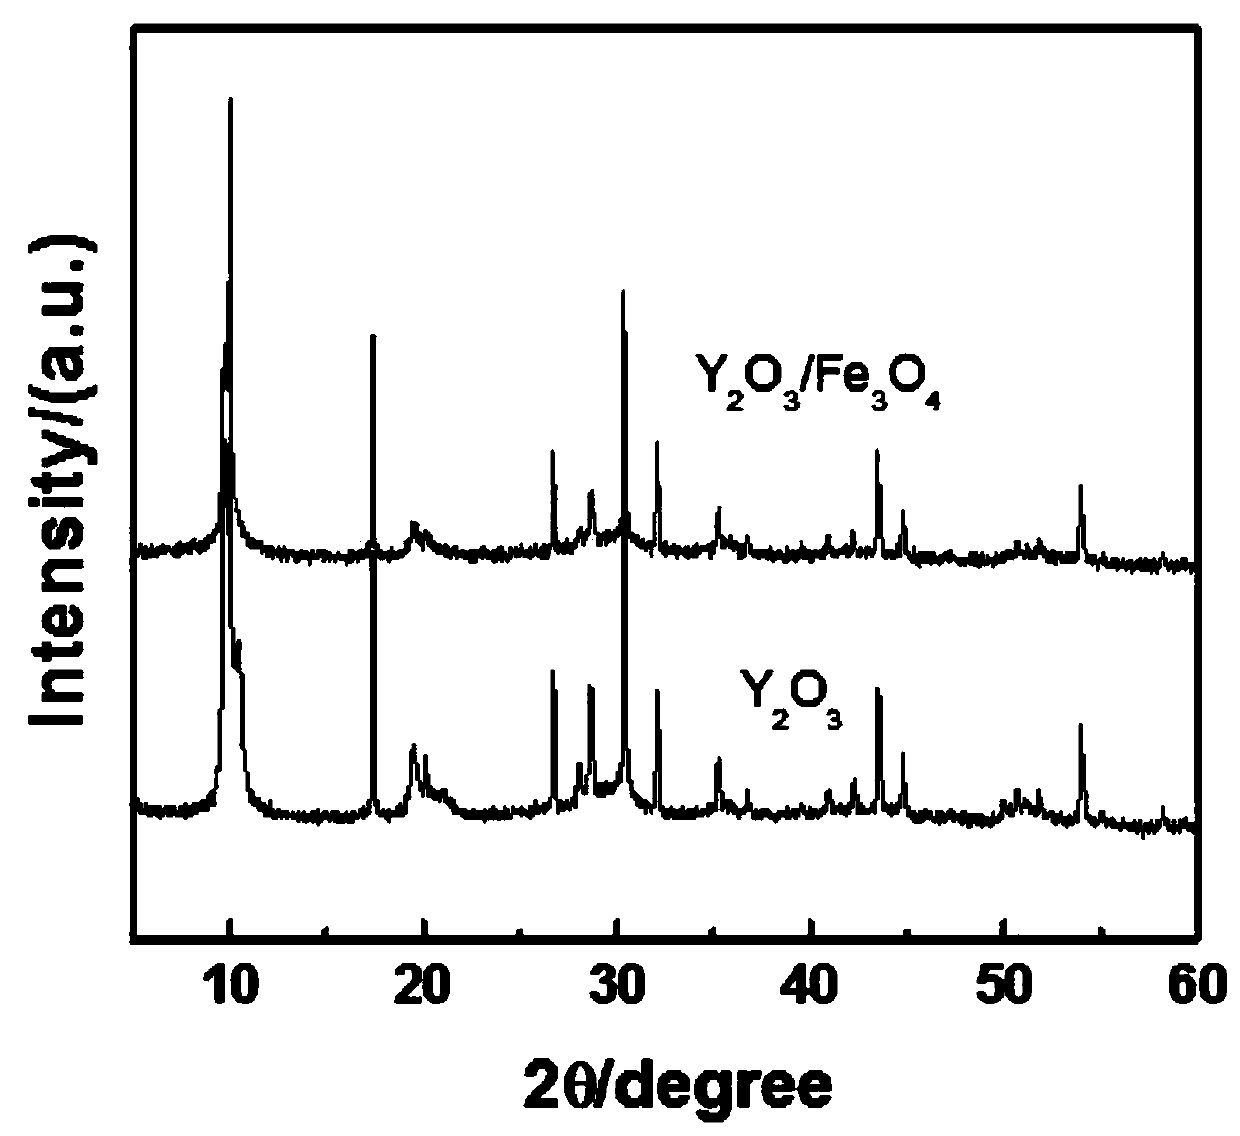 Preparation and Application of a Yttrium Oxide-Ferric Oxide Composite Nano Antibacterial Material